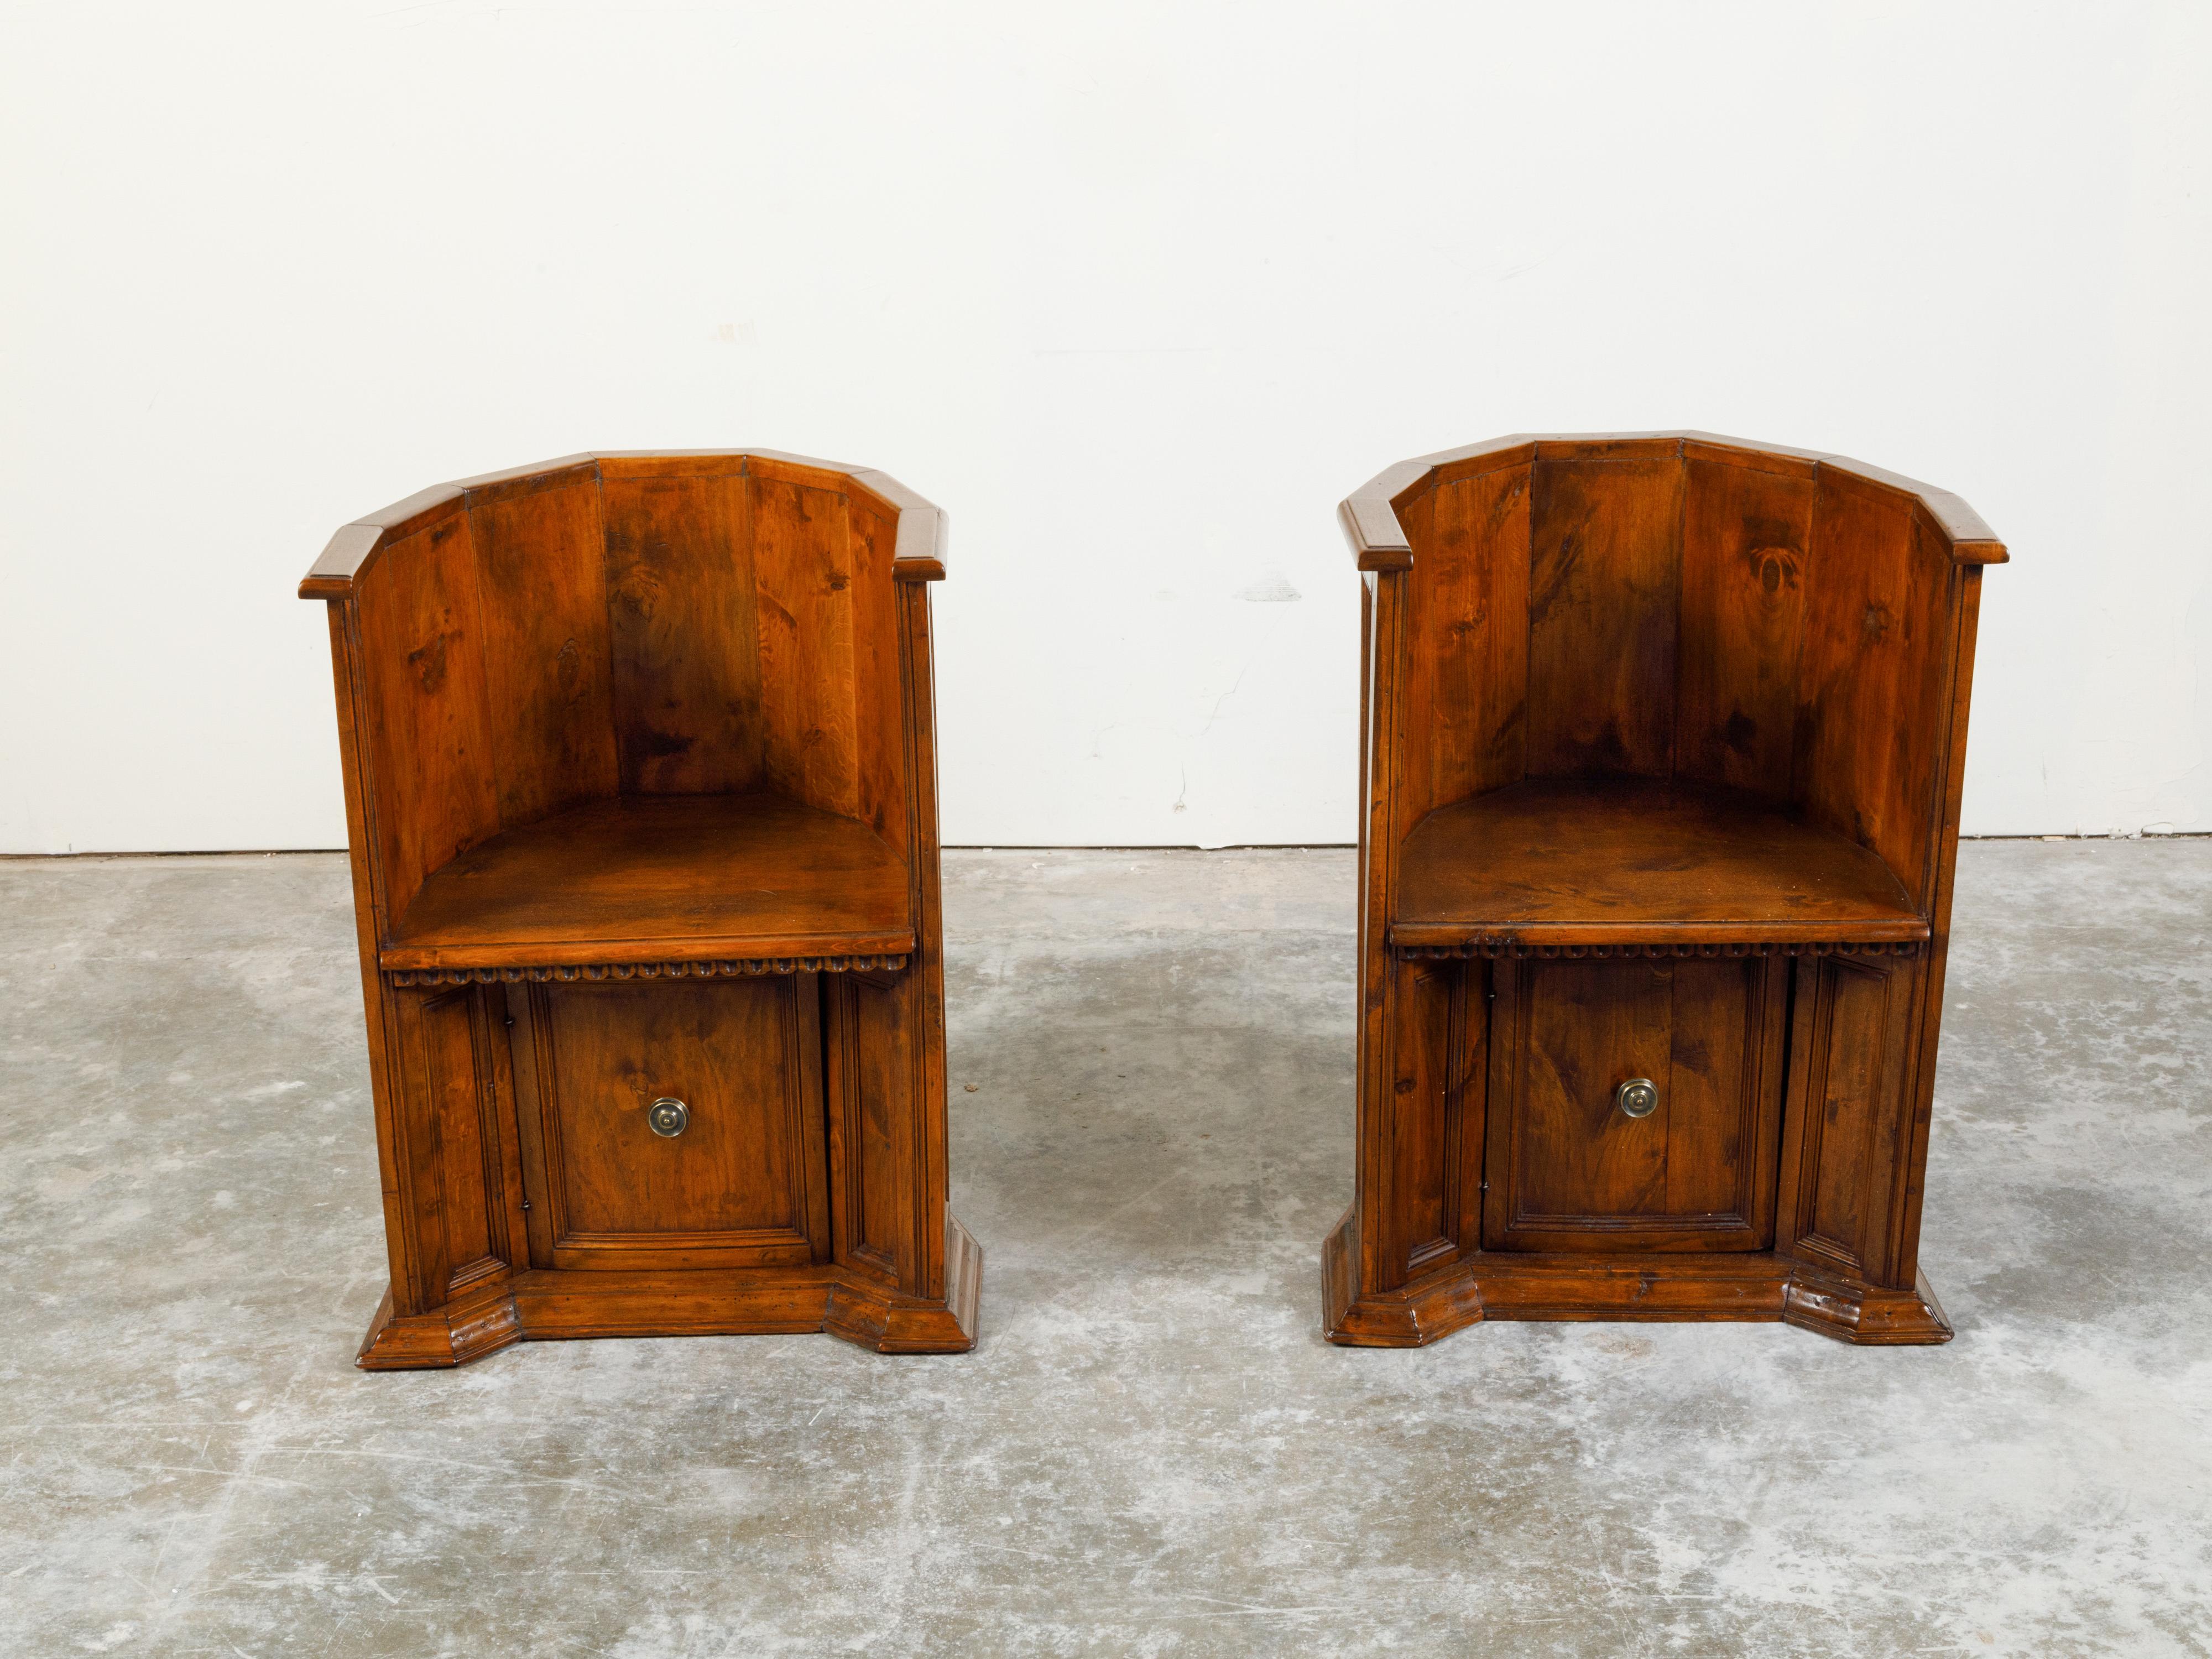 Une paire de chaises en bois de style Renaissance italienne du 19ème siècle, avec des dossiers massifs enveloppants, des motifs de scoop et des portes inférieures. Créée en Italie au cours du XIXe siècle, cette paire de chaises nous ramène à